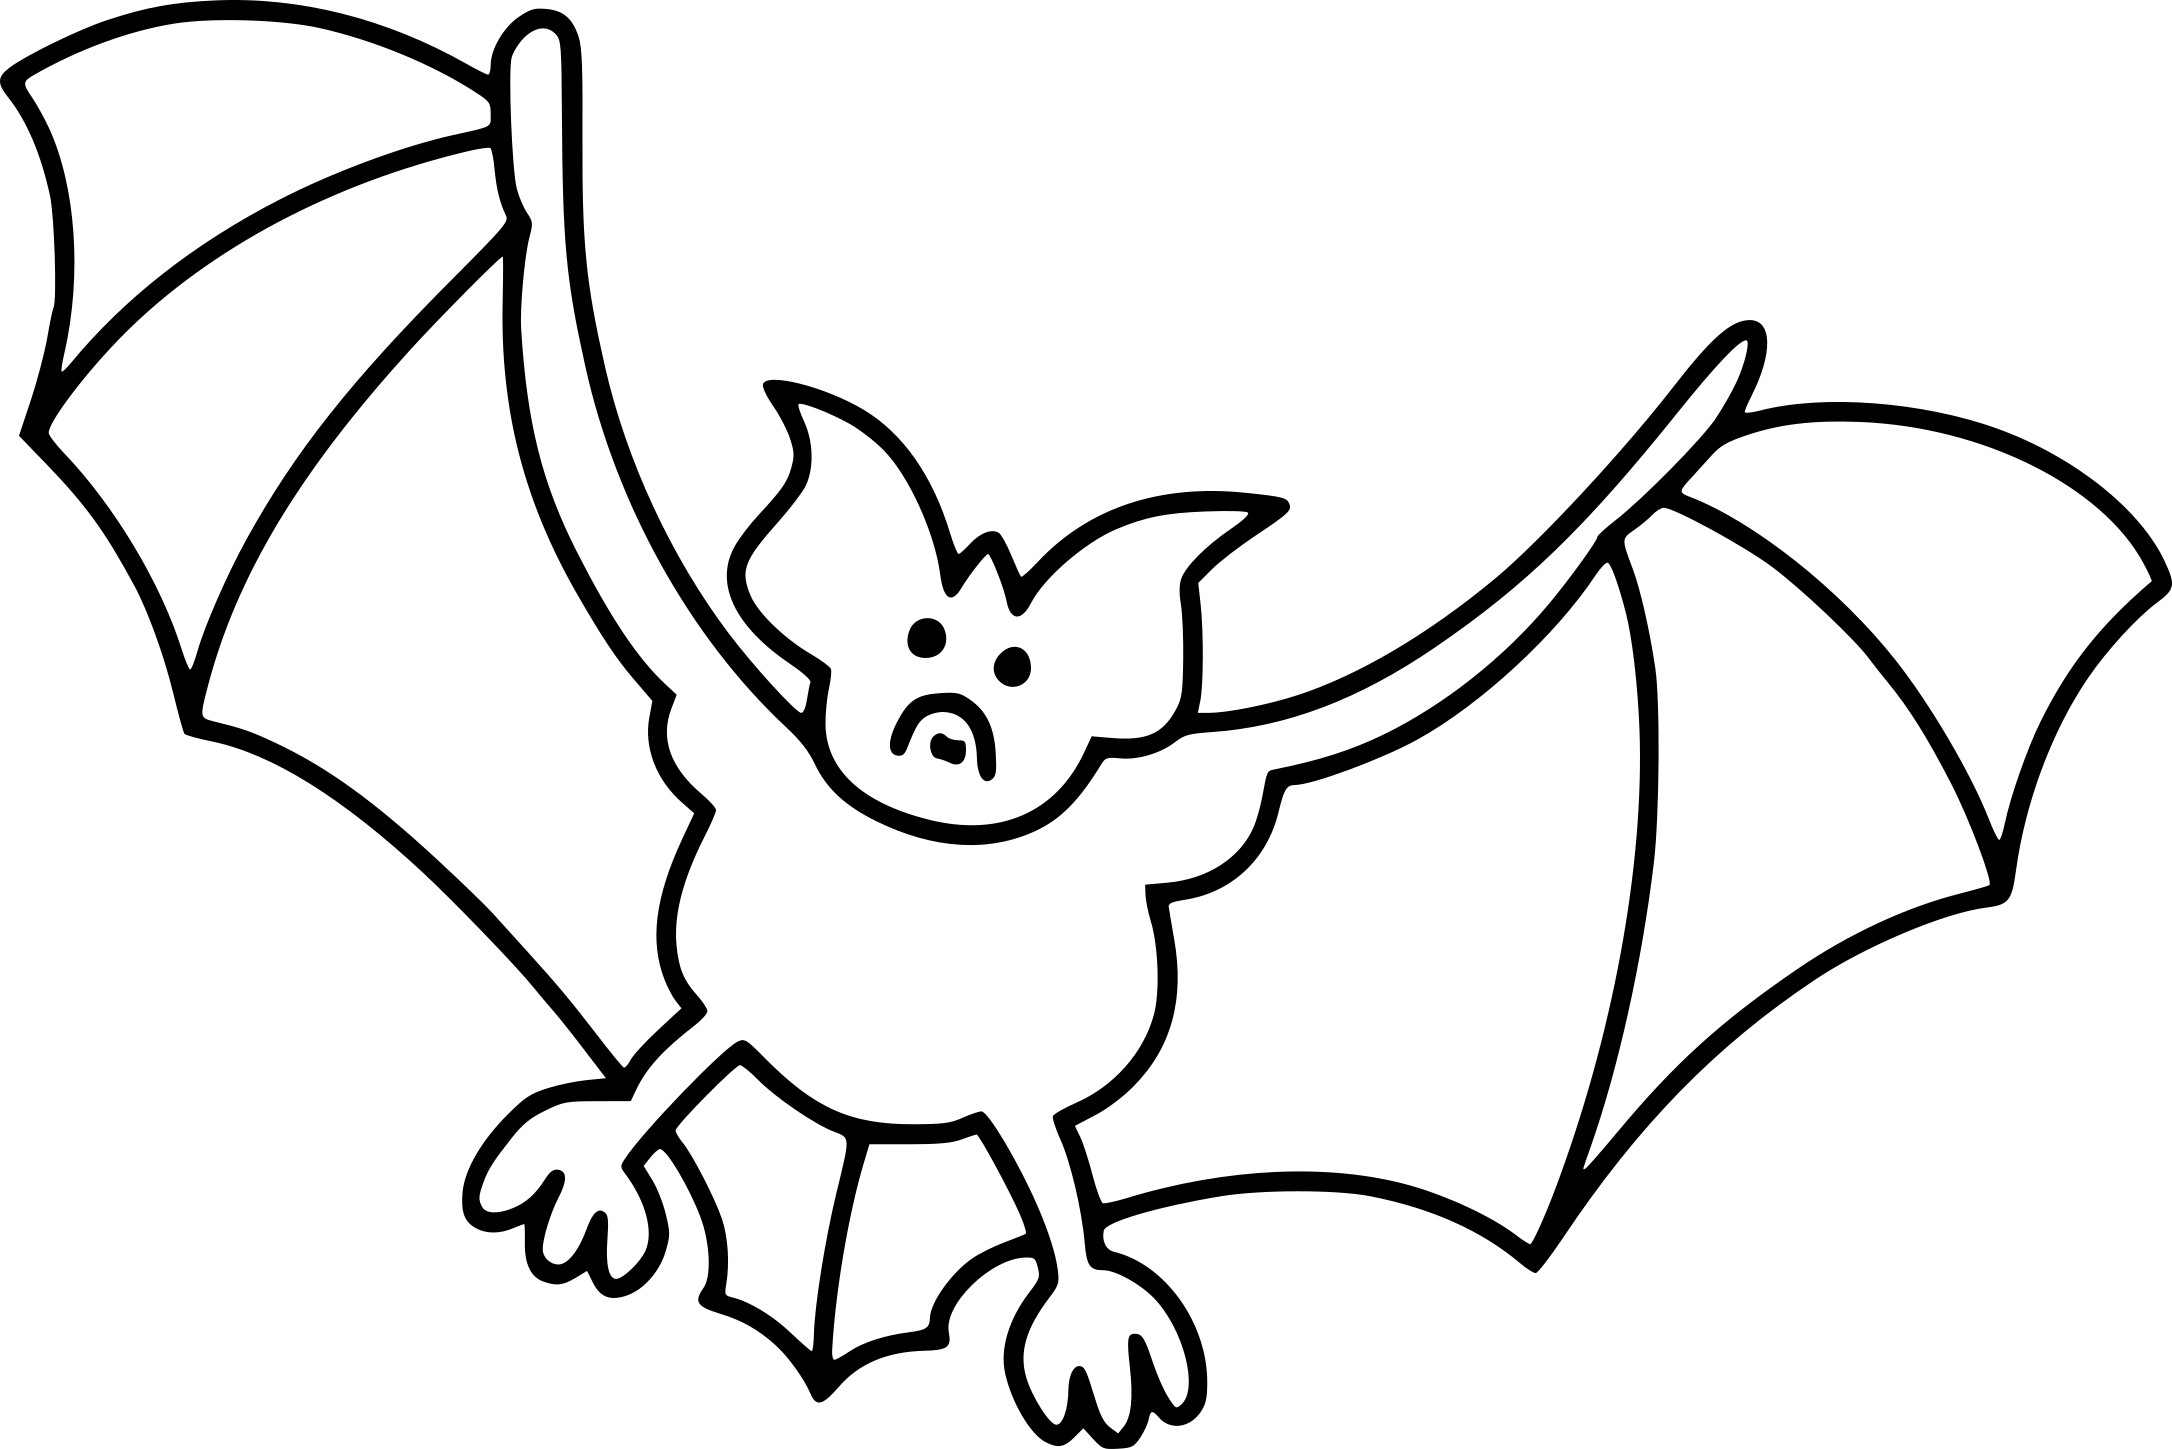 Disegno di Disegno del pipistrello di Halloween e da colorare